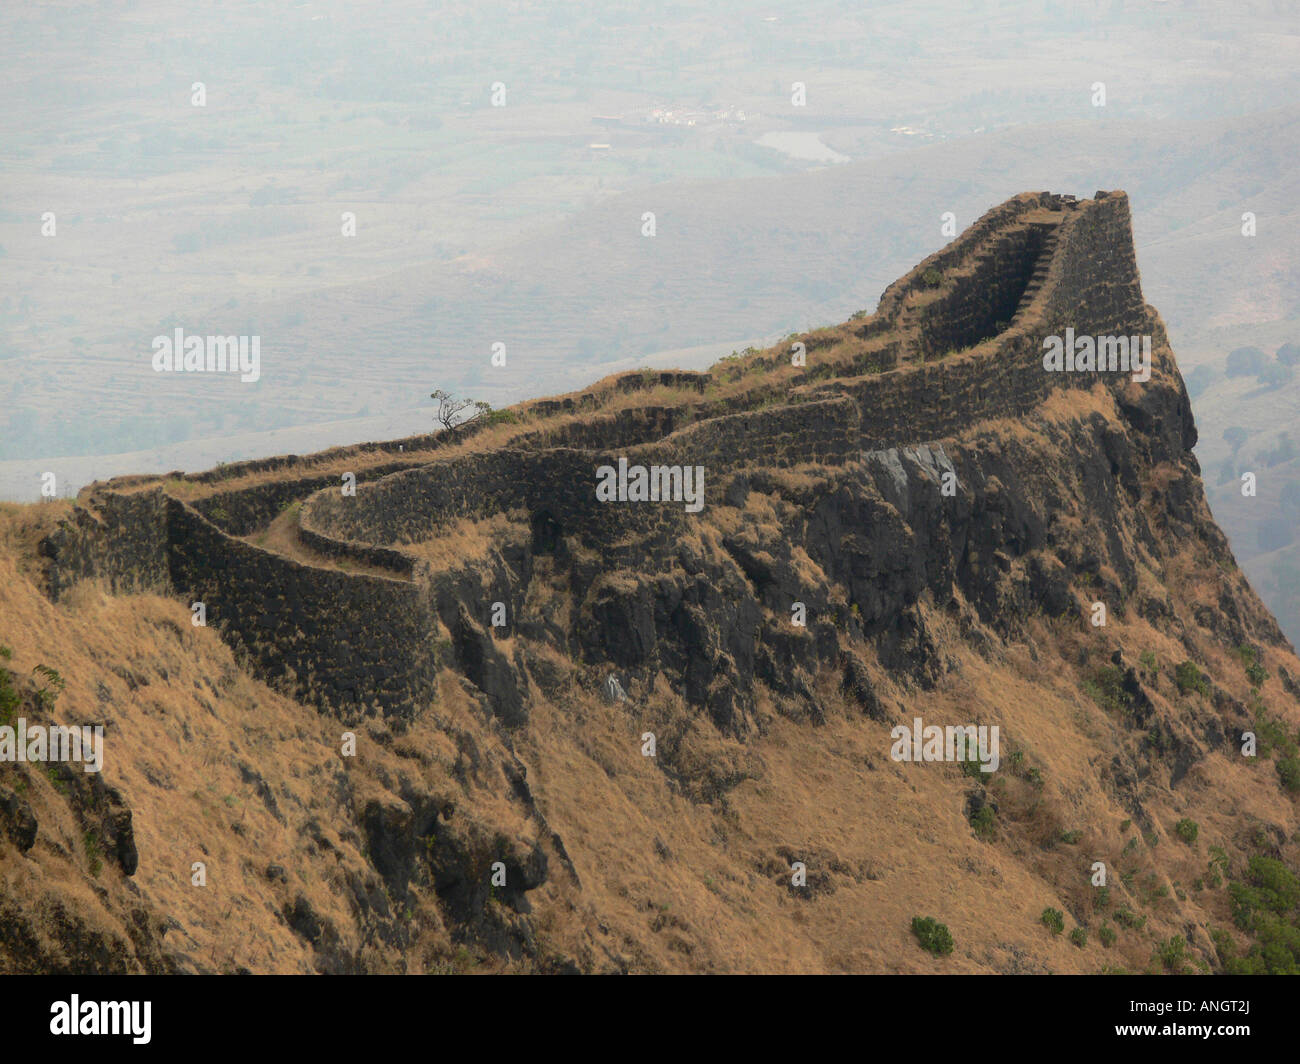 Torna Fort Trek - Trek To the Highest Hill Fort In Pune